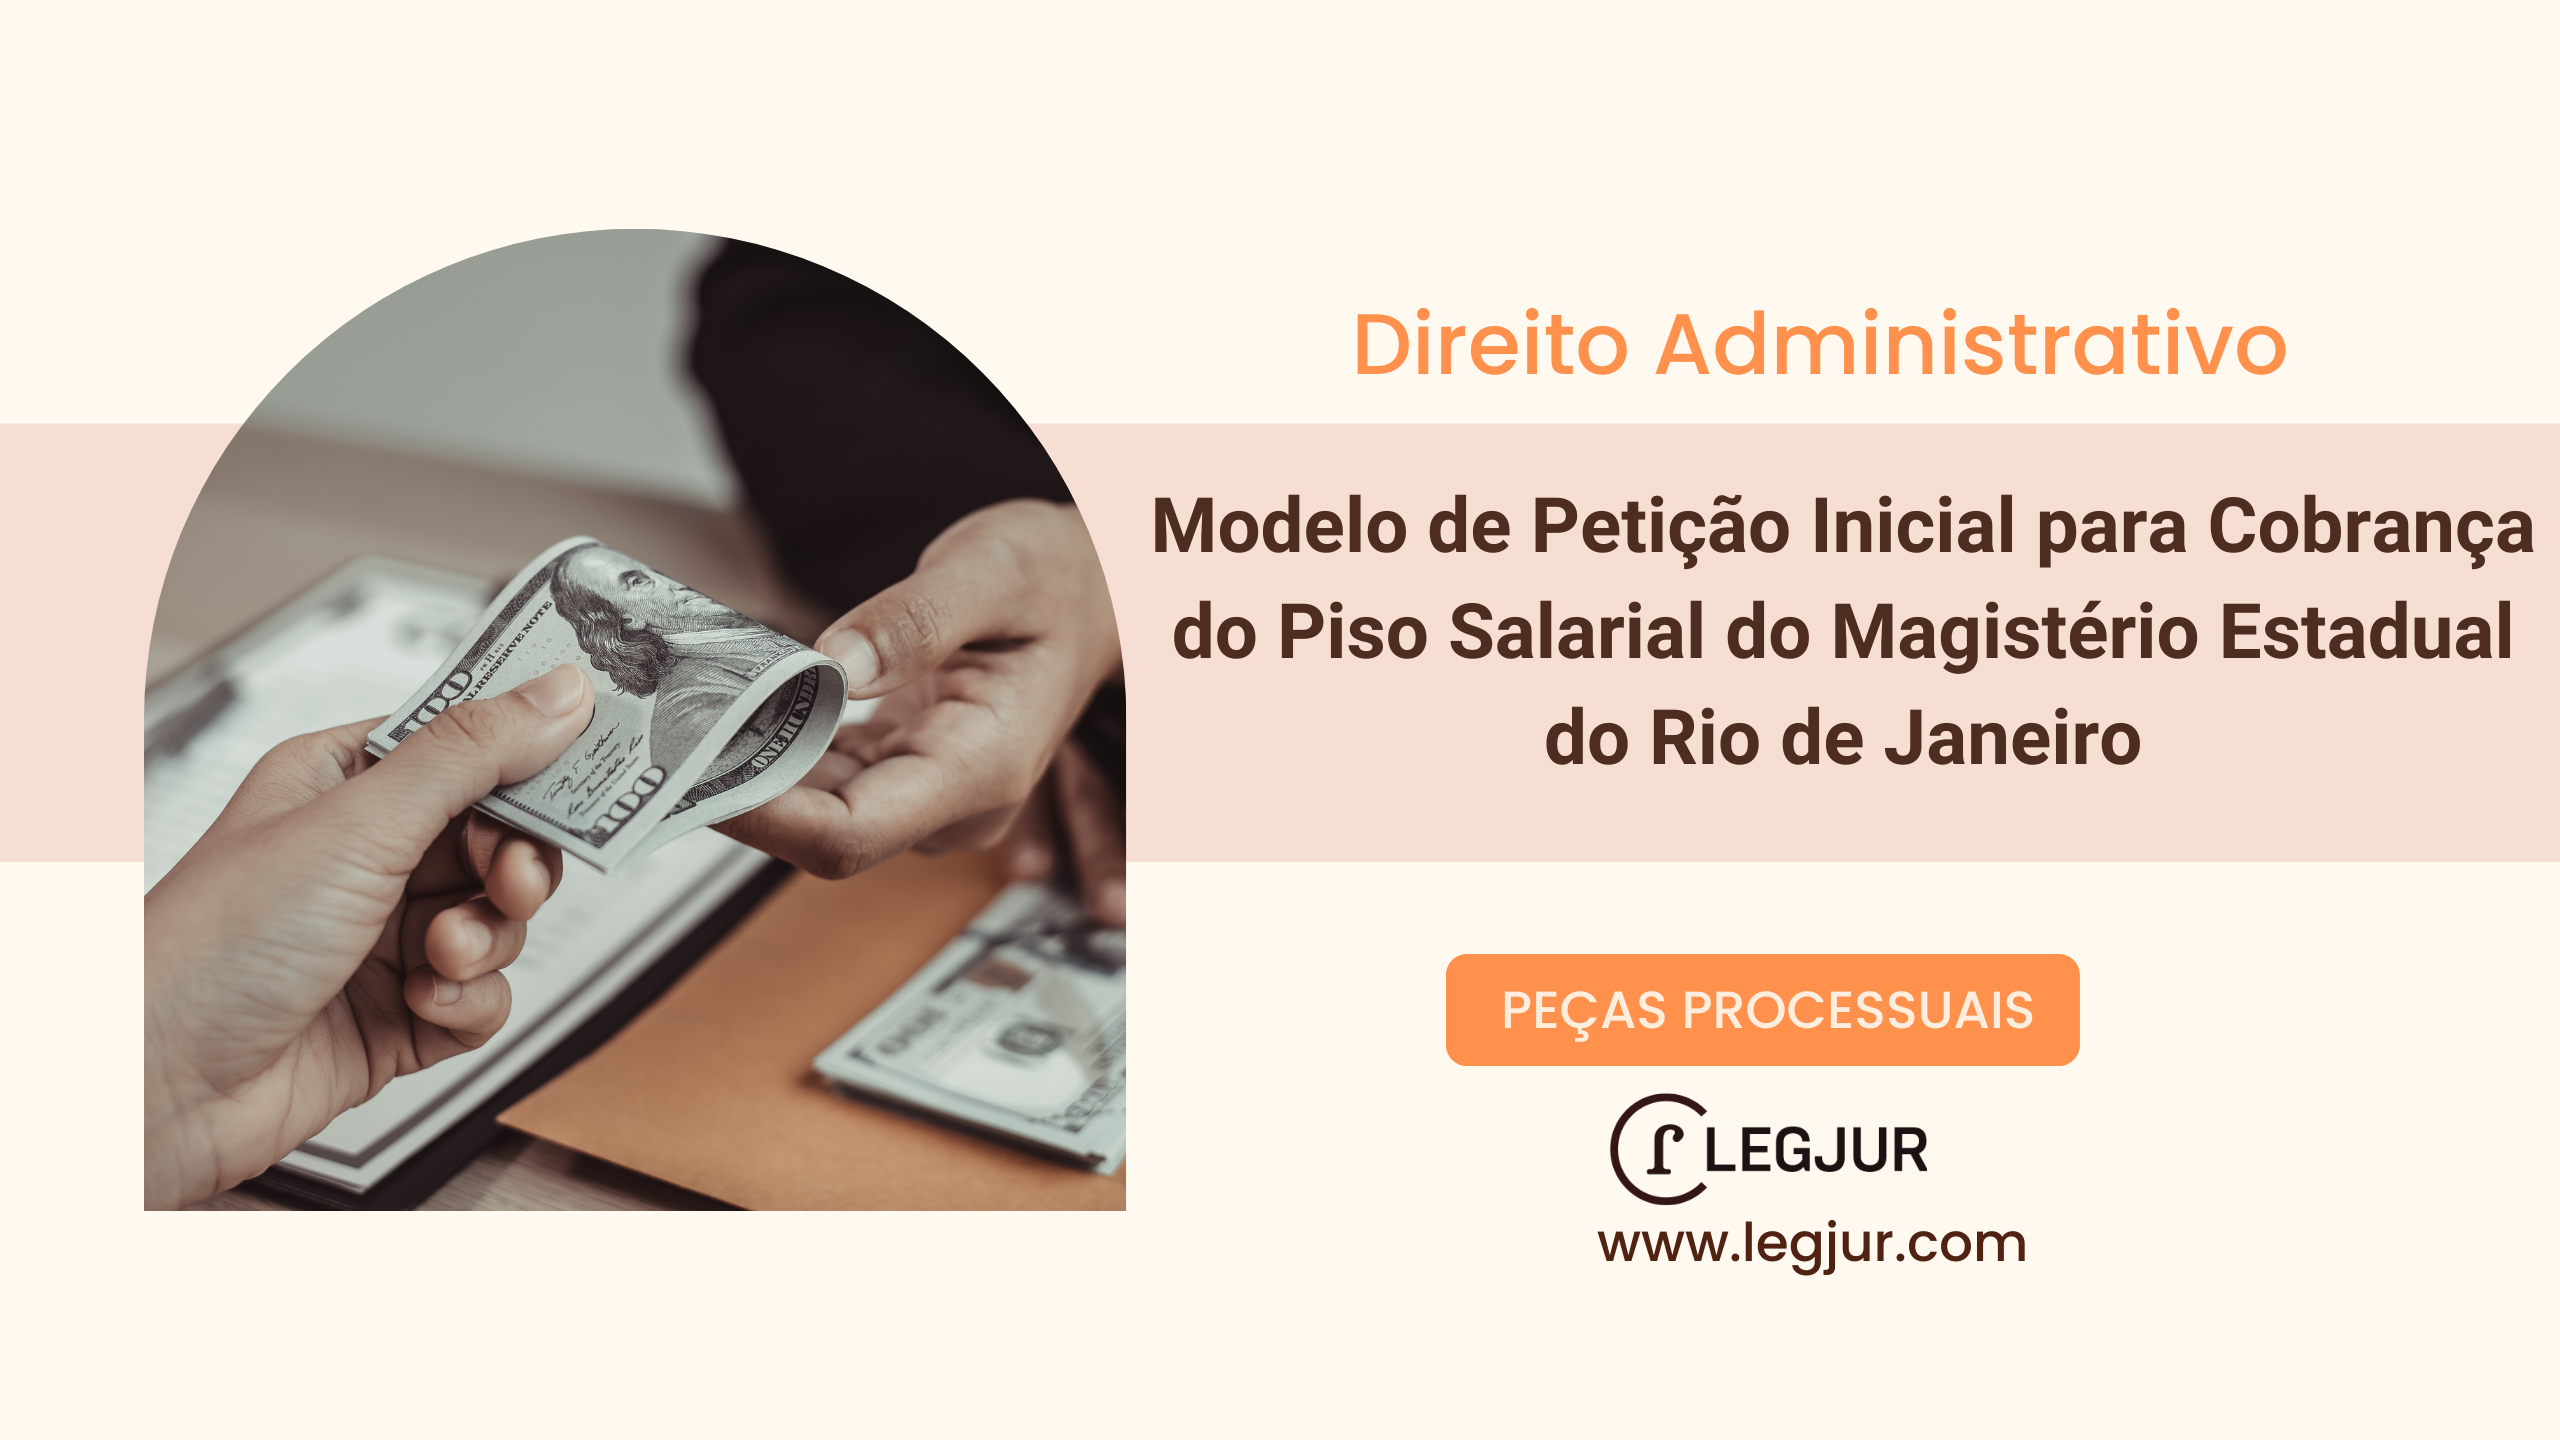 Modelo de Petição Inicial para Cobrança do Piso Salarial do Magistério Estadual do Rio de Janeiro